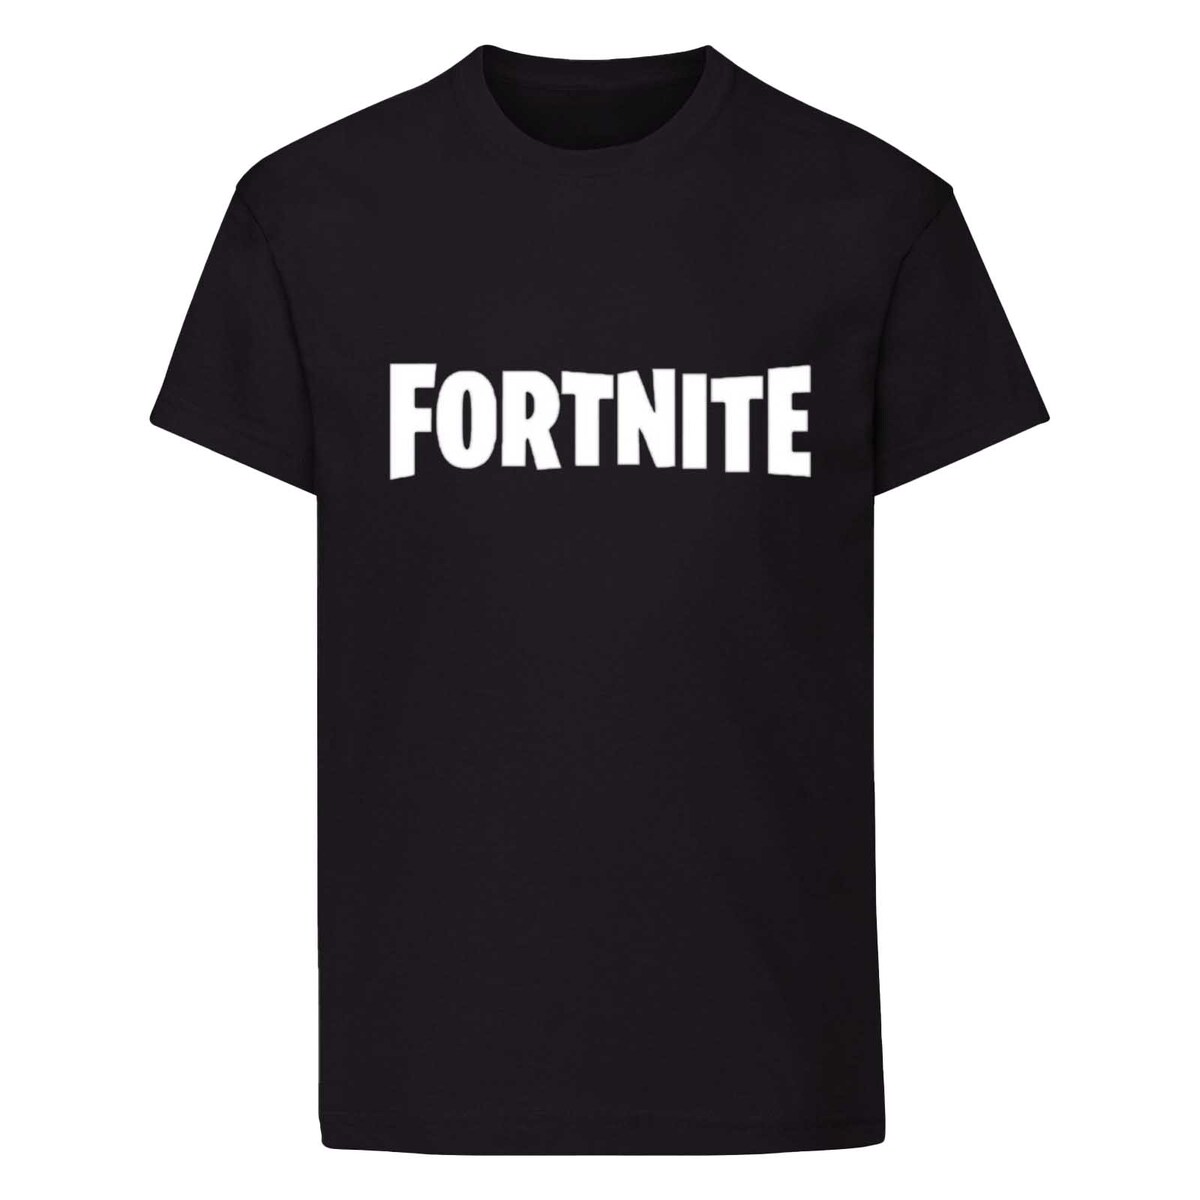 ショートスリーブ Tシャツ シャツ プリントT キャラクター フォートナイト Fortnite オフィシャル商品 ボーイズ ロゴ 海外通販 半袖 日本製 子供 カットソー キッズ トップス いよいよ人気ブランド